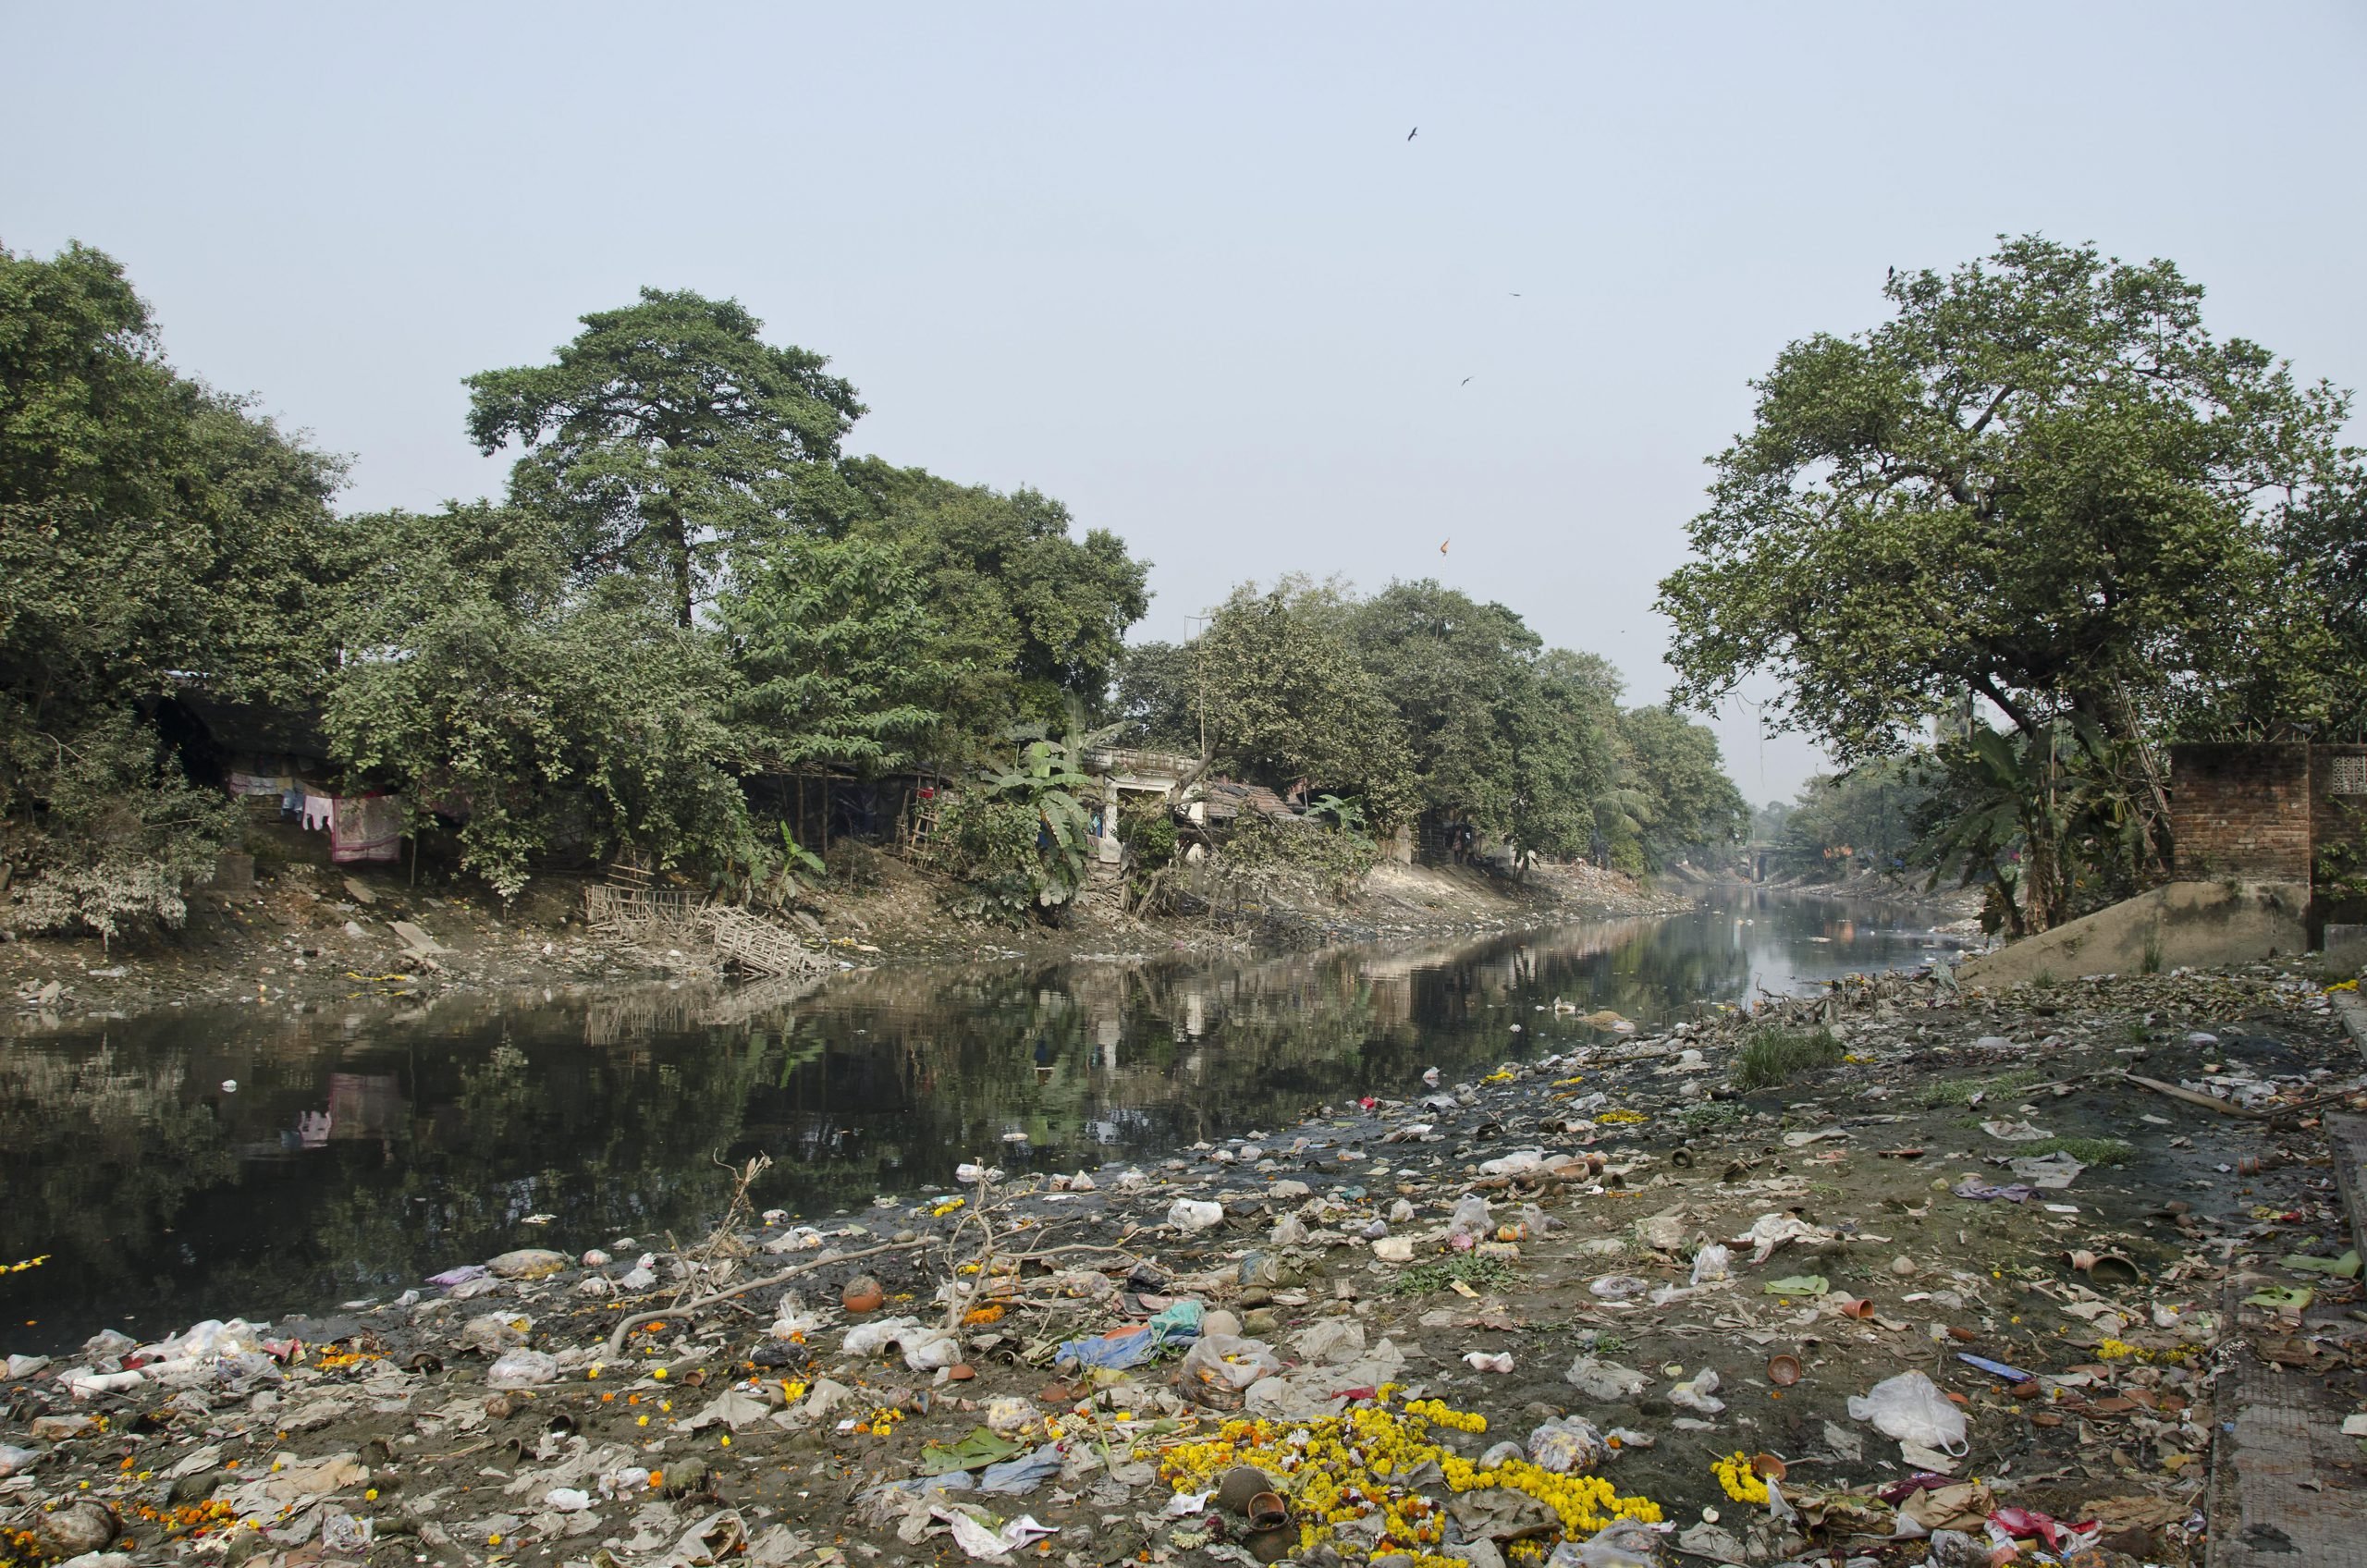 Rubbish on the banks of the Adi Ganga